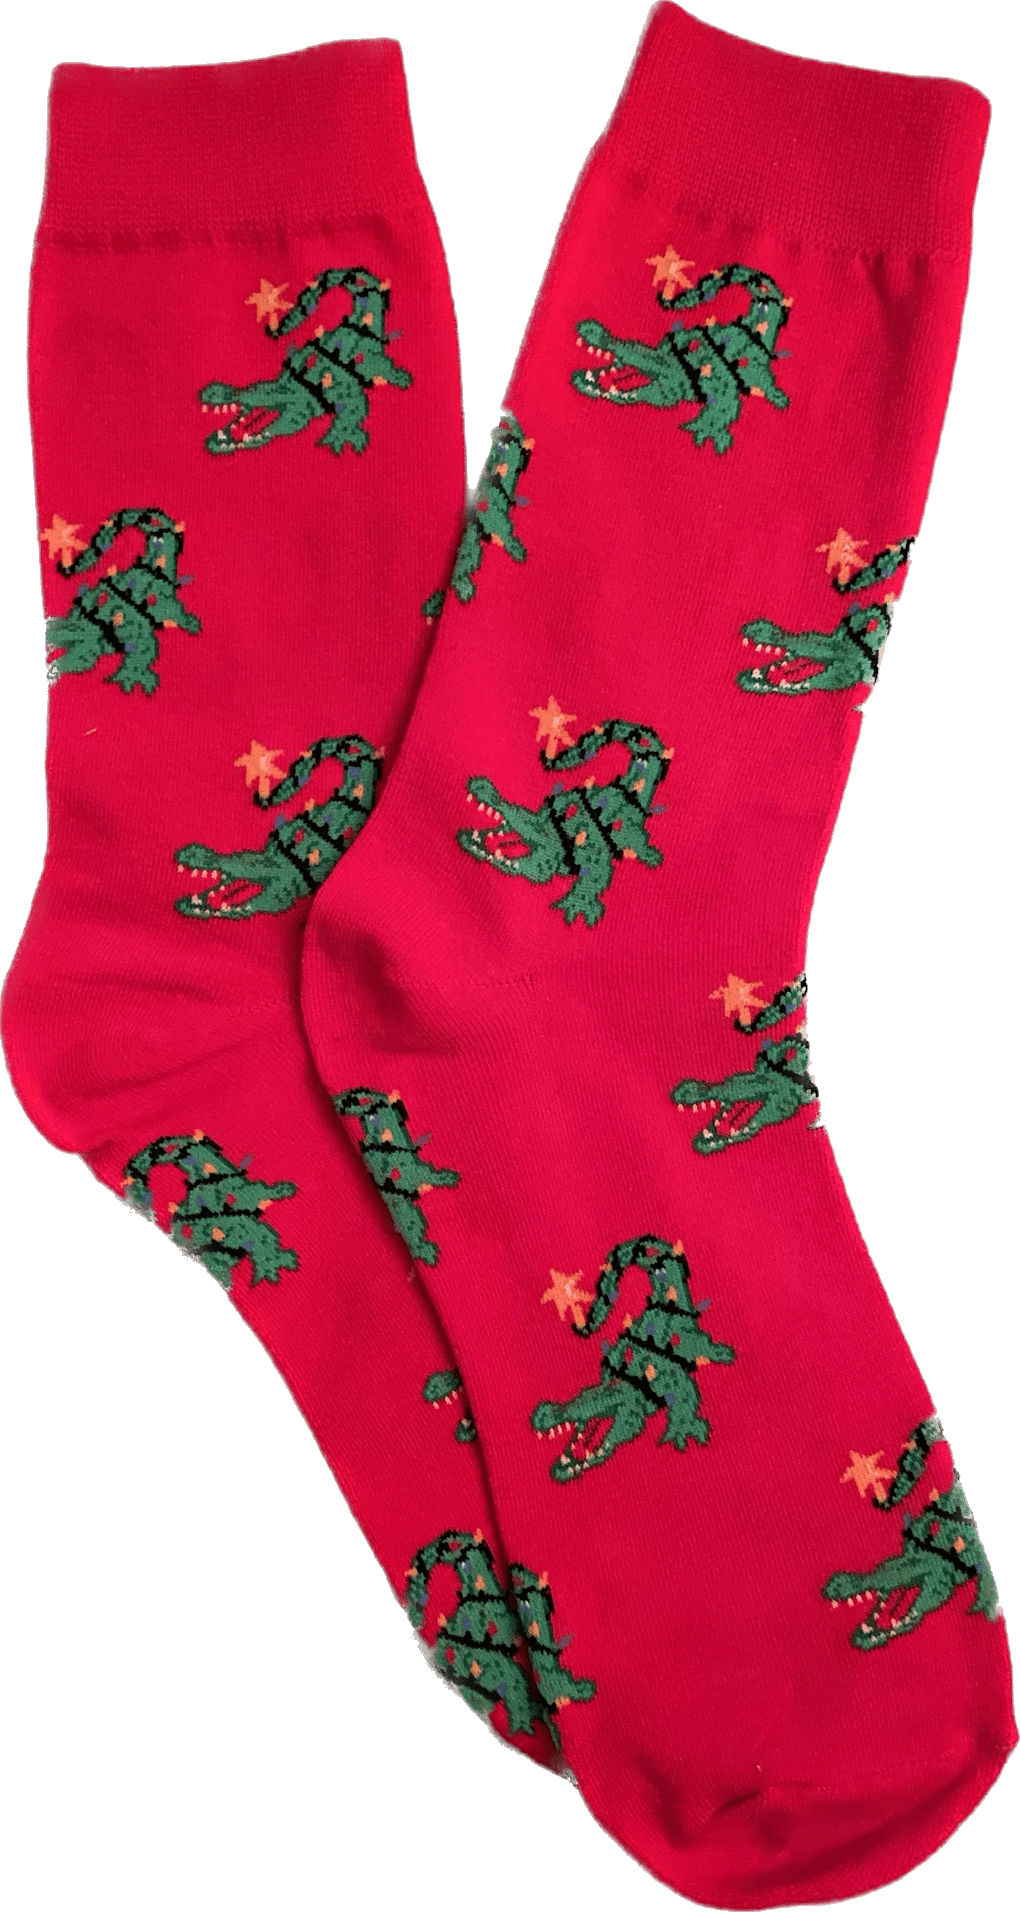 Whereable Art Whereable Art Al The Alligator Christmas Socks - Little Miss Muffin Children & Home